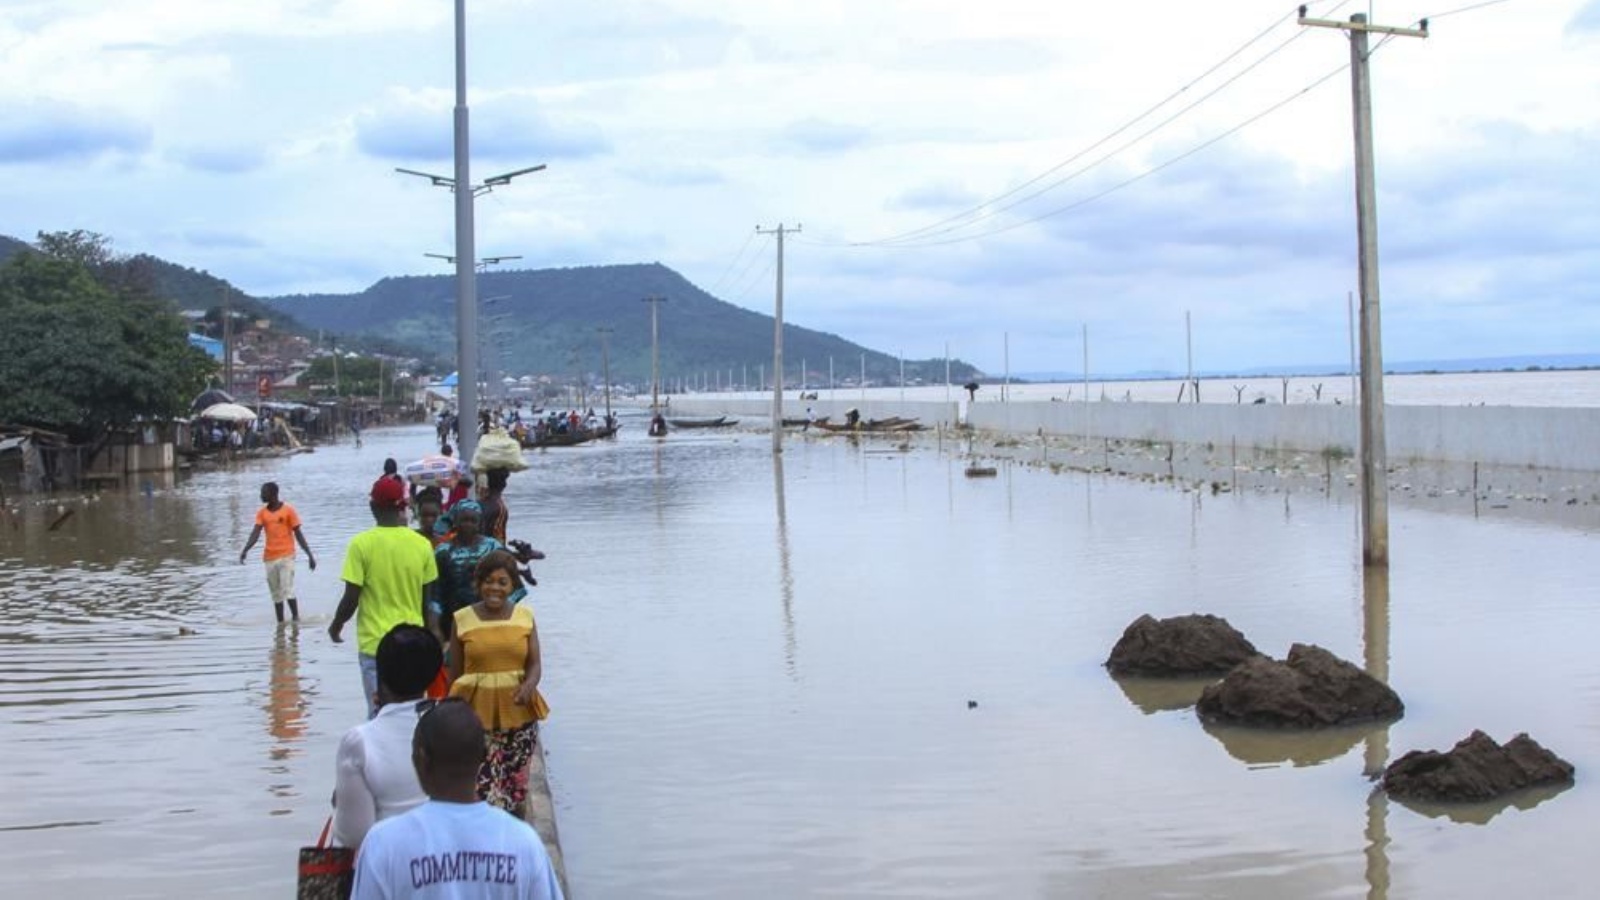 أشخاص تقطعت بهم السبل بسبب الفيضانات من جراء هطول الأمطار في كوجي بنيجيريا (6 ت1 2022، أ ف ب). أشخاص تقطعت بهم السبل بسبب الفيضانات من جراء هطول الأمطار في كوجي بنيجيريا 6 أكتوبر 2022